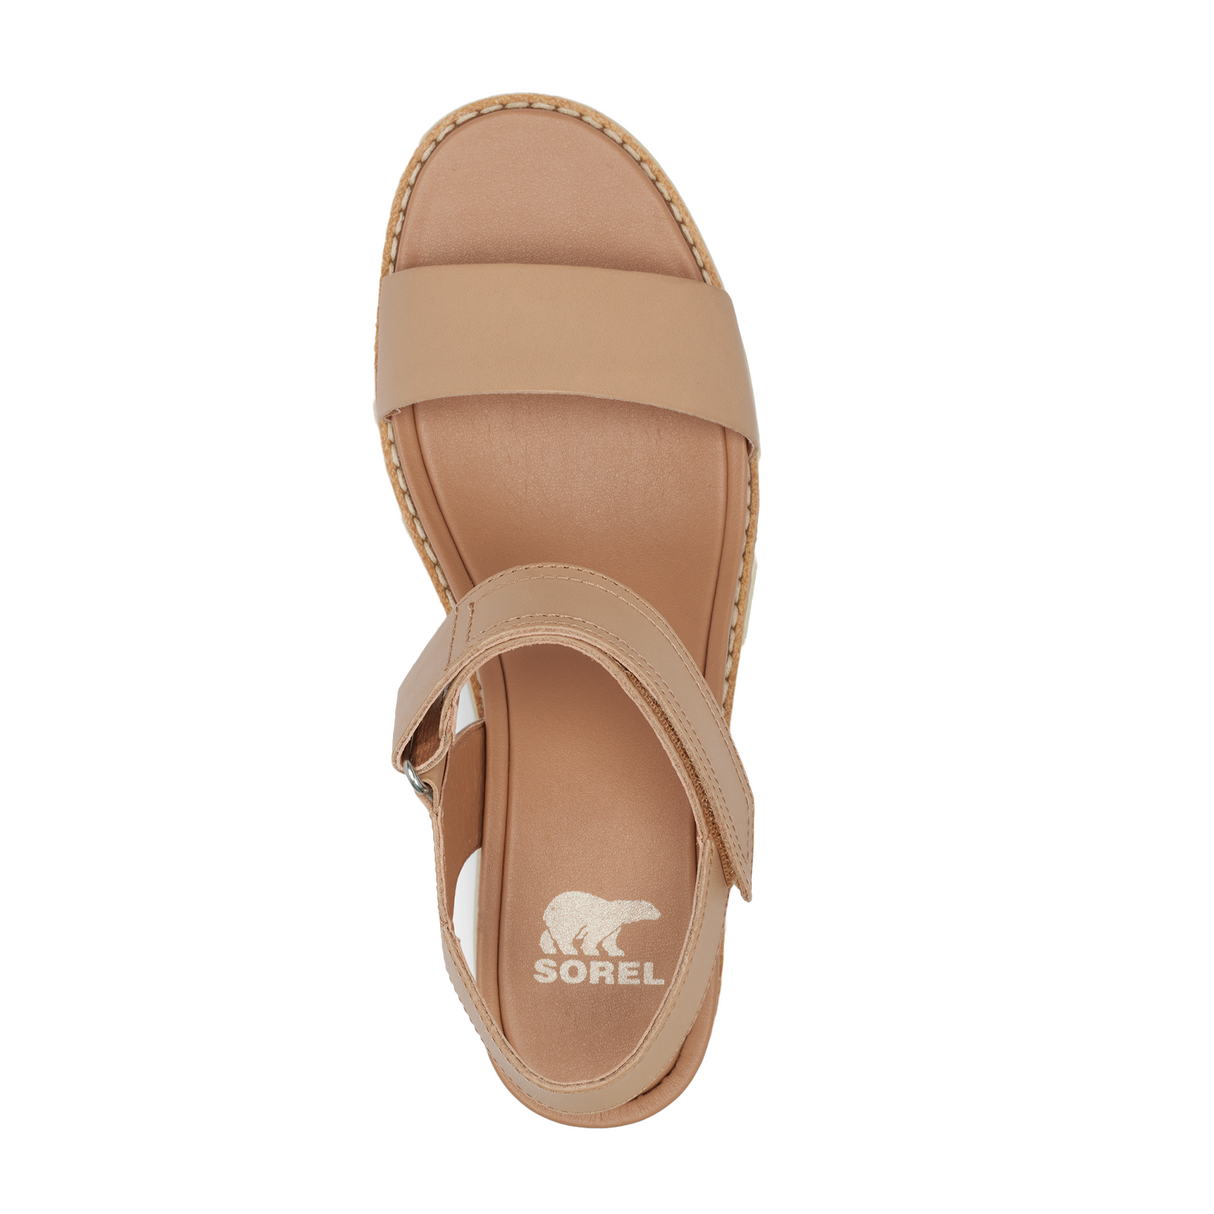 Sorel Joanie IV Y Strap Wedge Sandal (Women) - Honest Beige/Bleached Ceramic Sandals - Heel/Wedge - The Heel Shoe Fitters